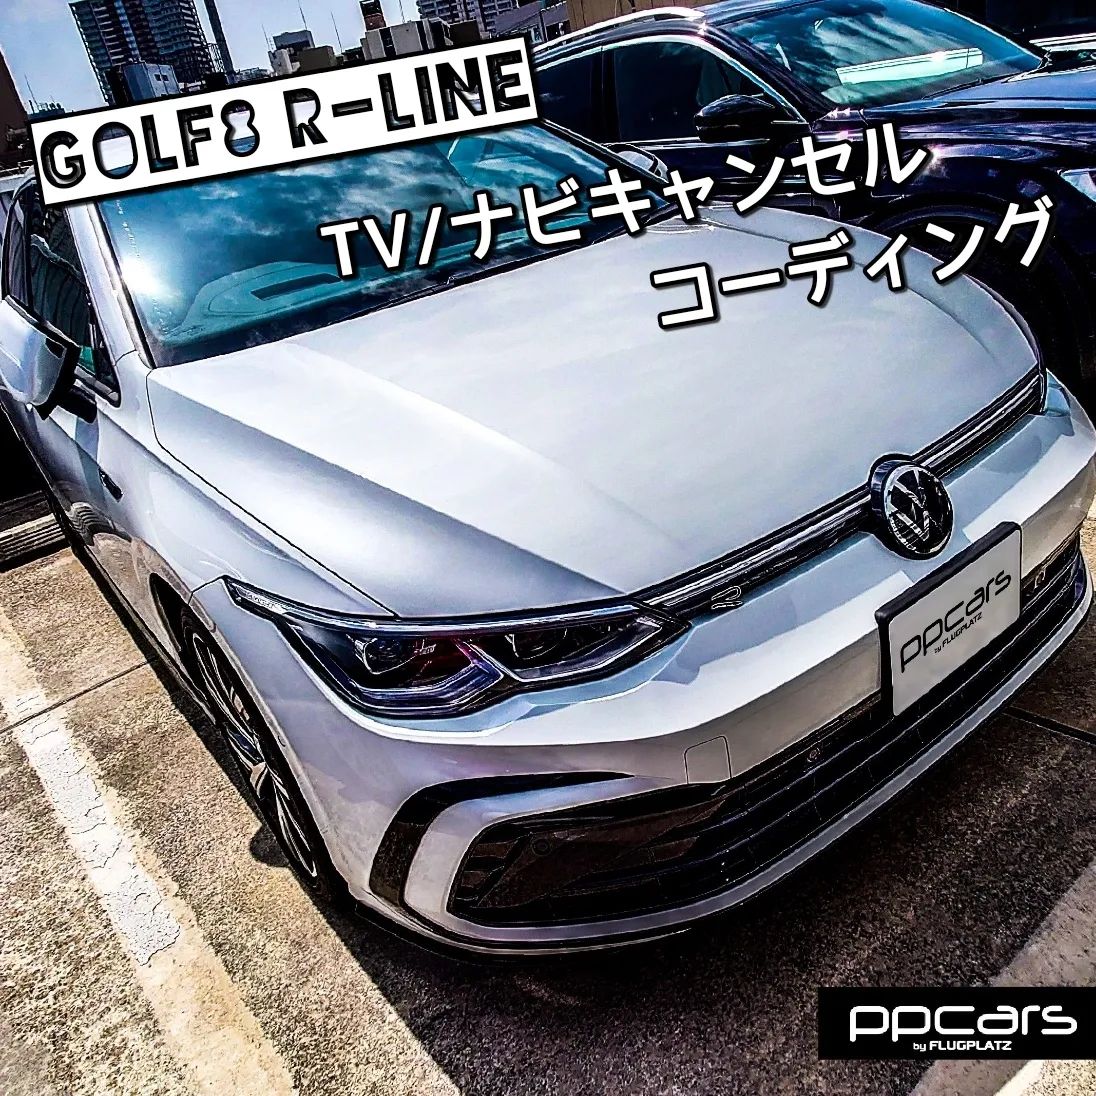 Golf8 (5H) TDI R-Line x コーディング (TVキャンセル/ナビキャンセル)